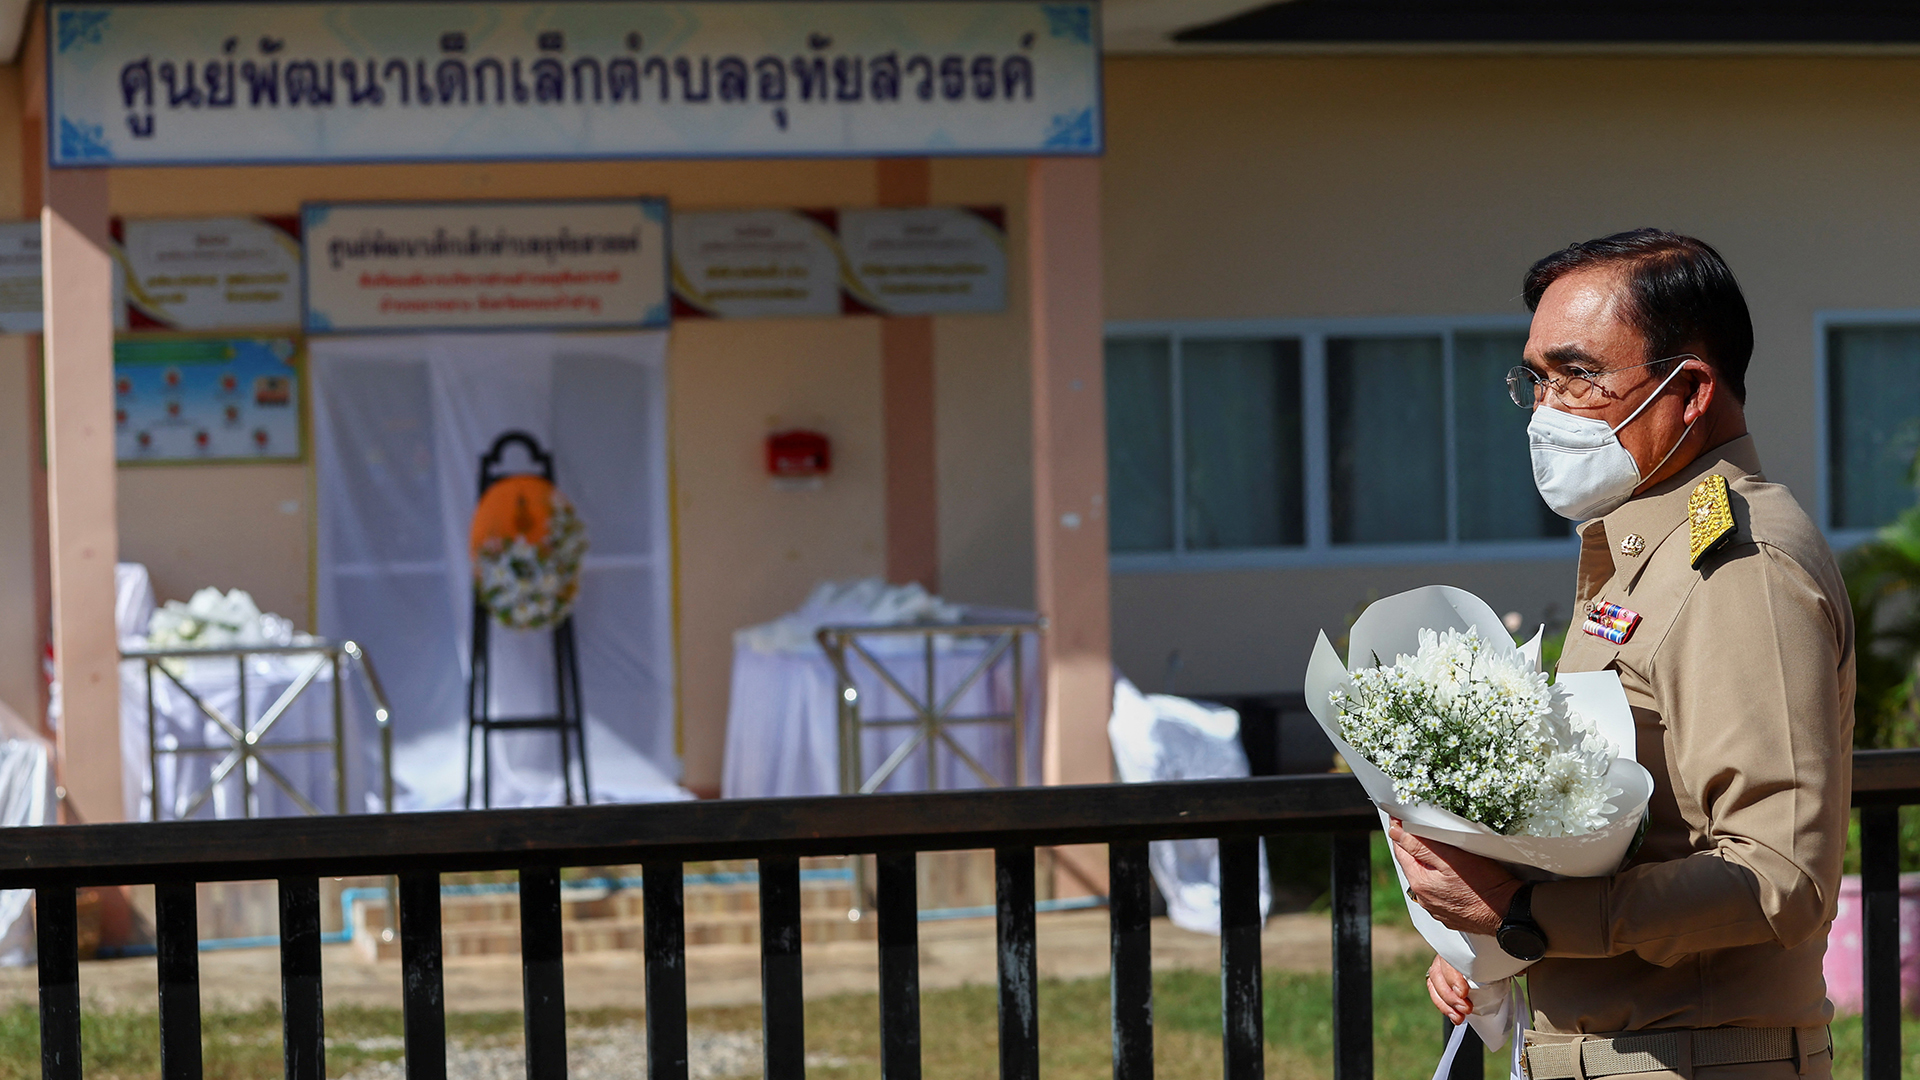 Prayut Chan-o-cha legt Blumen vor einer Schule in Thailand nieder. | REUTERS